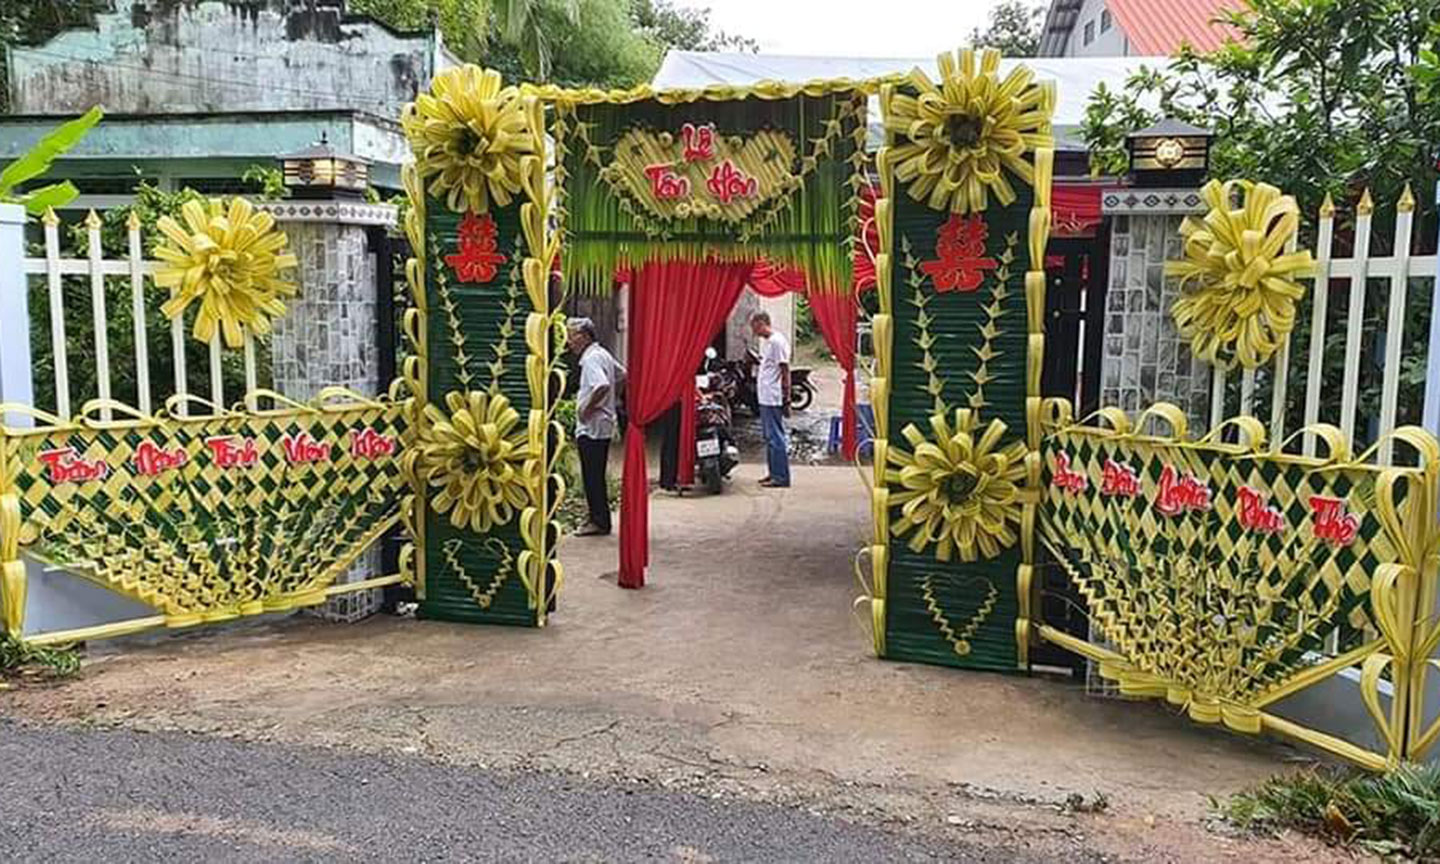 Cổng cưới lá dừa ở Tiền Giang đẹp như phim cổ tích đang gây sốt mạng xã hội từ Nam ra Bắc - Ảnh 1.